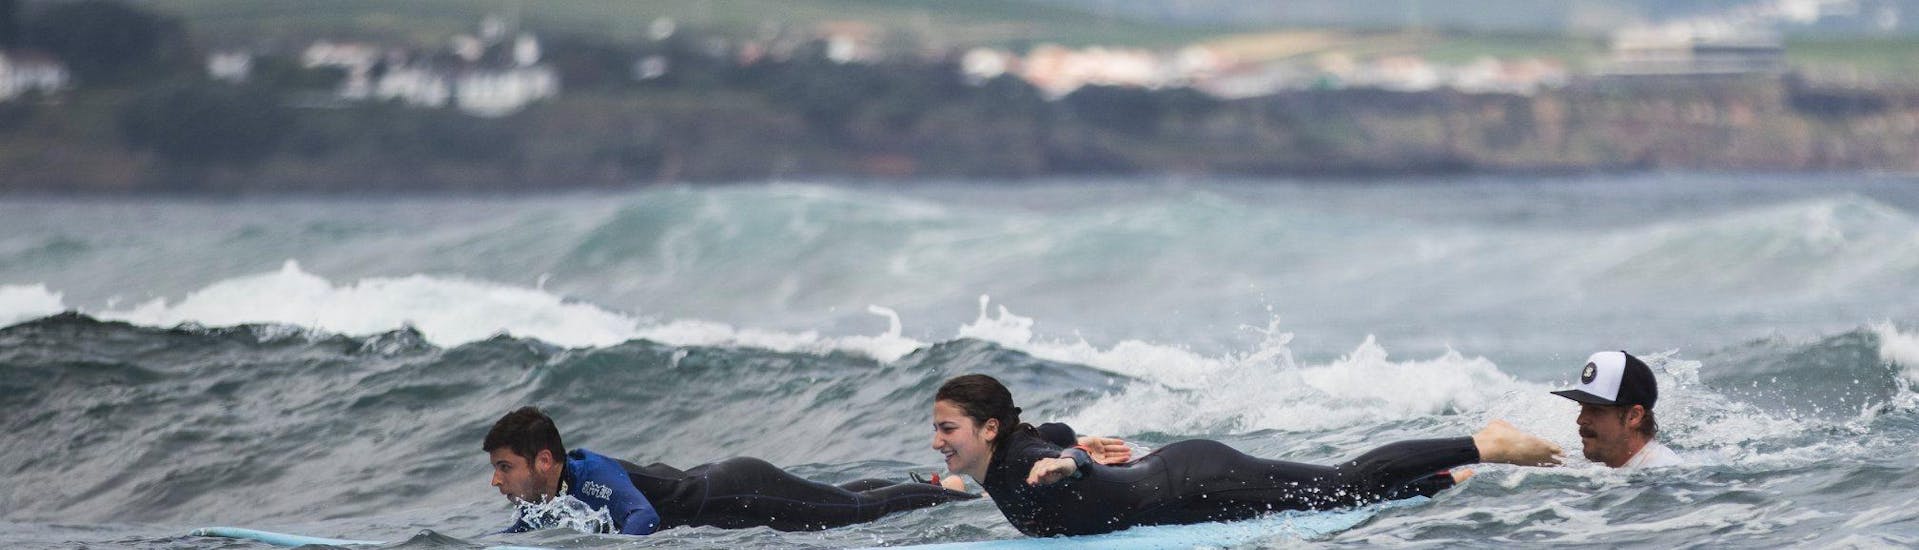 Zwei junge Surfer auf dem Surfboard während dem Surfkurs in Ponta Delgada für alle Levels.